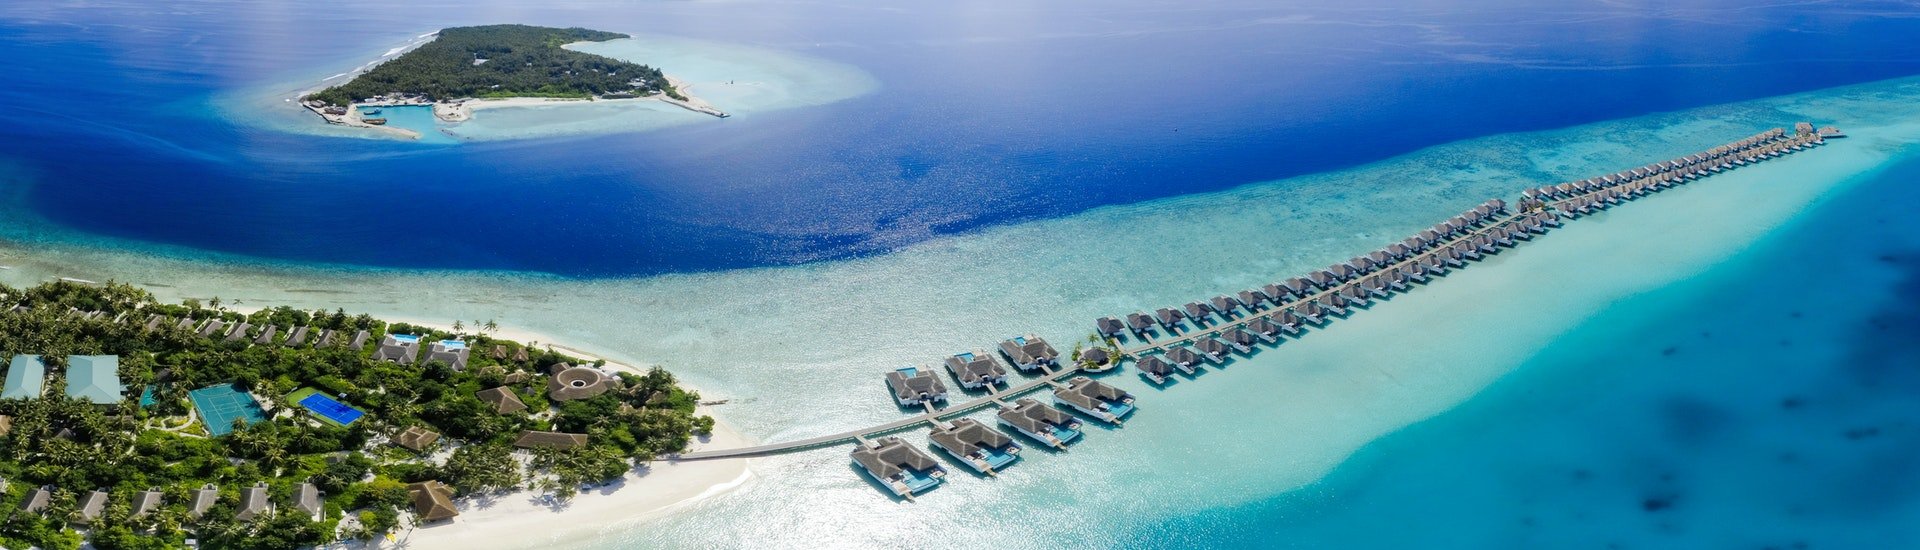 Maldives Beach2